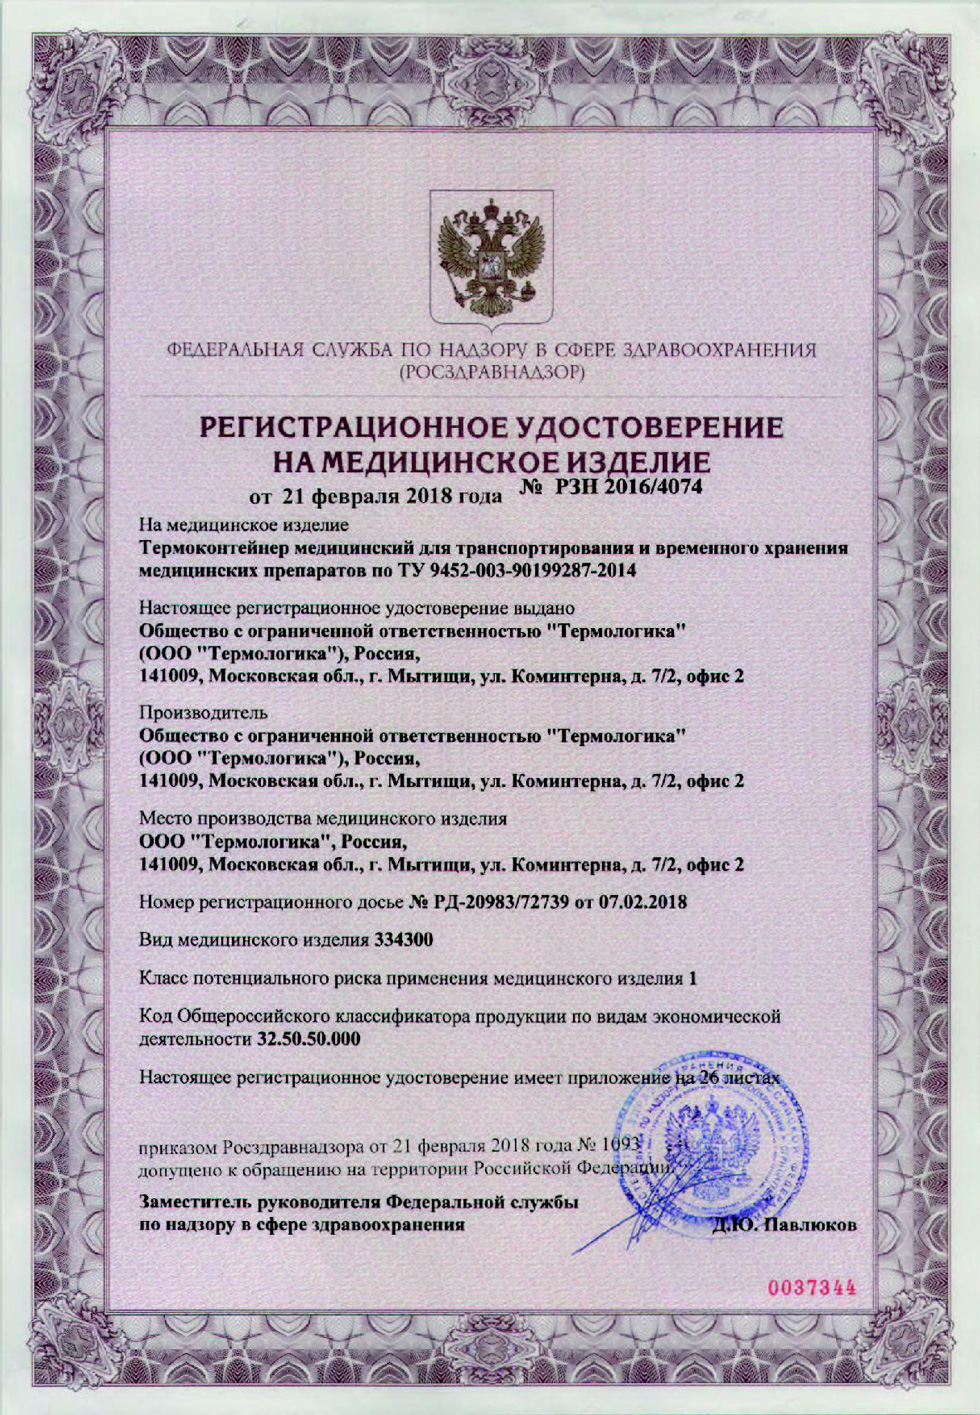 ГКА-25 ПЗ -07 регистрационное удостоверение